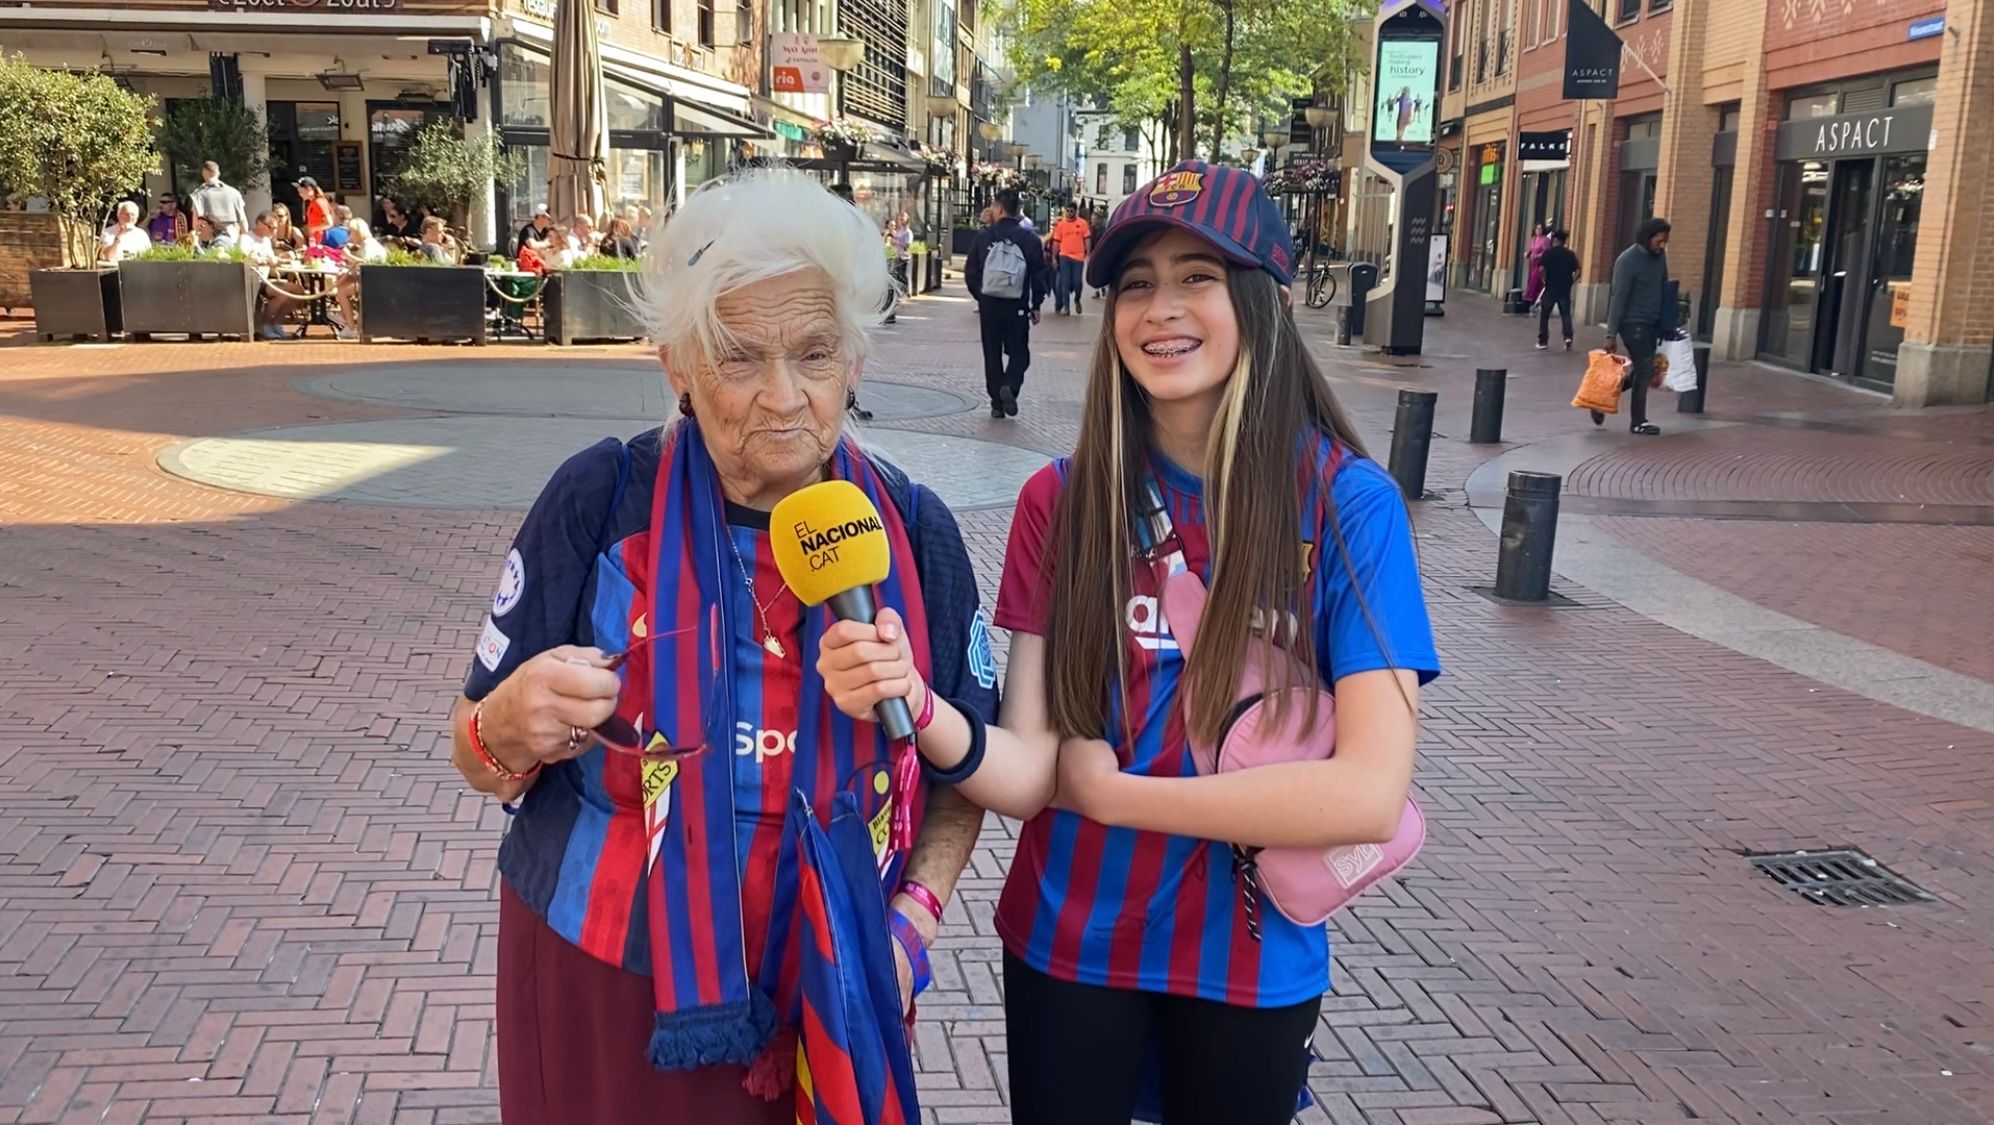 Los culés quieren la gloria en Eindhoven: "El Barça femenino es el mayor orgullo que tenemos" | VÍDEO